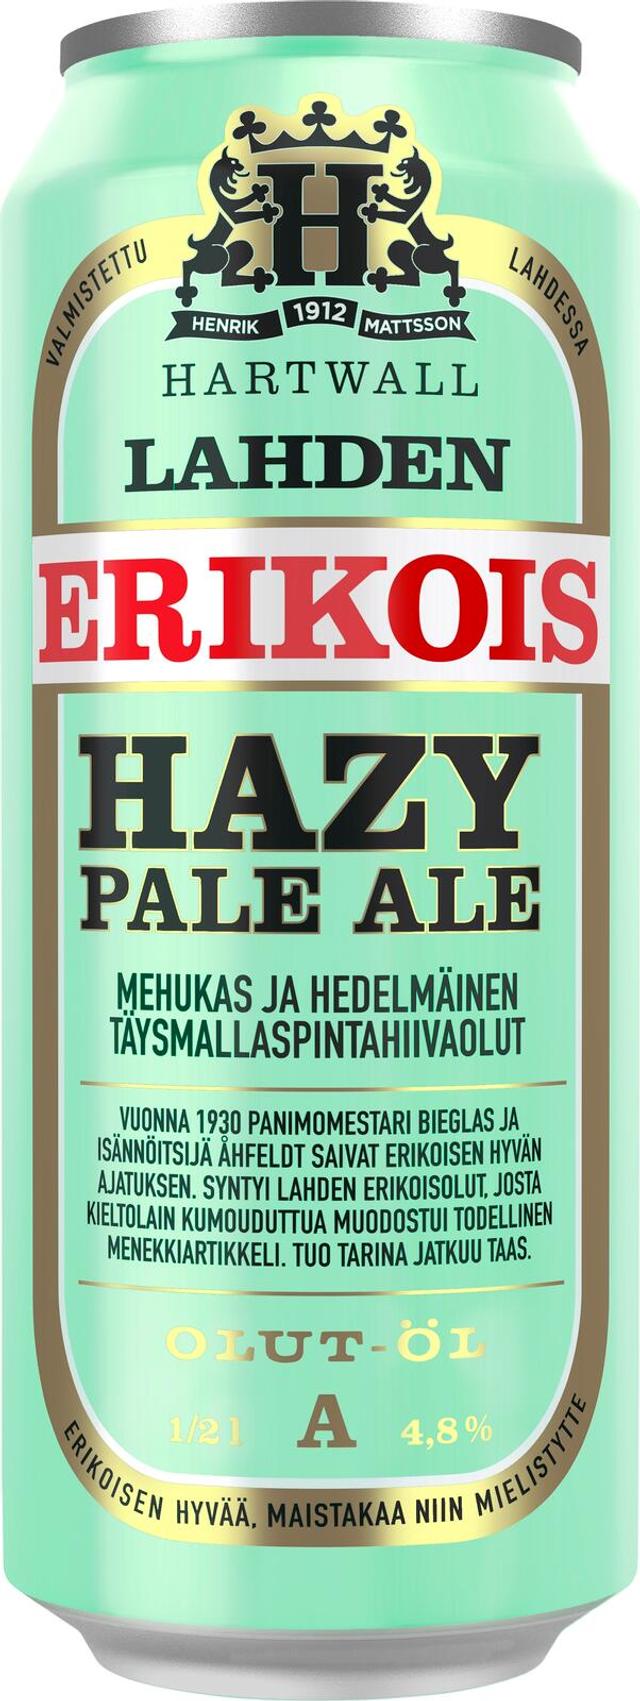 Lahden Erikois Hazy Pale Ale olut 4,8% 0,5 l